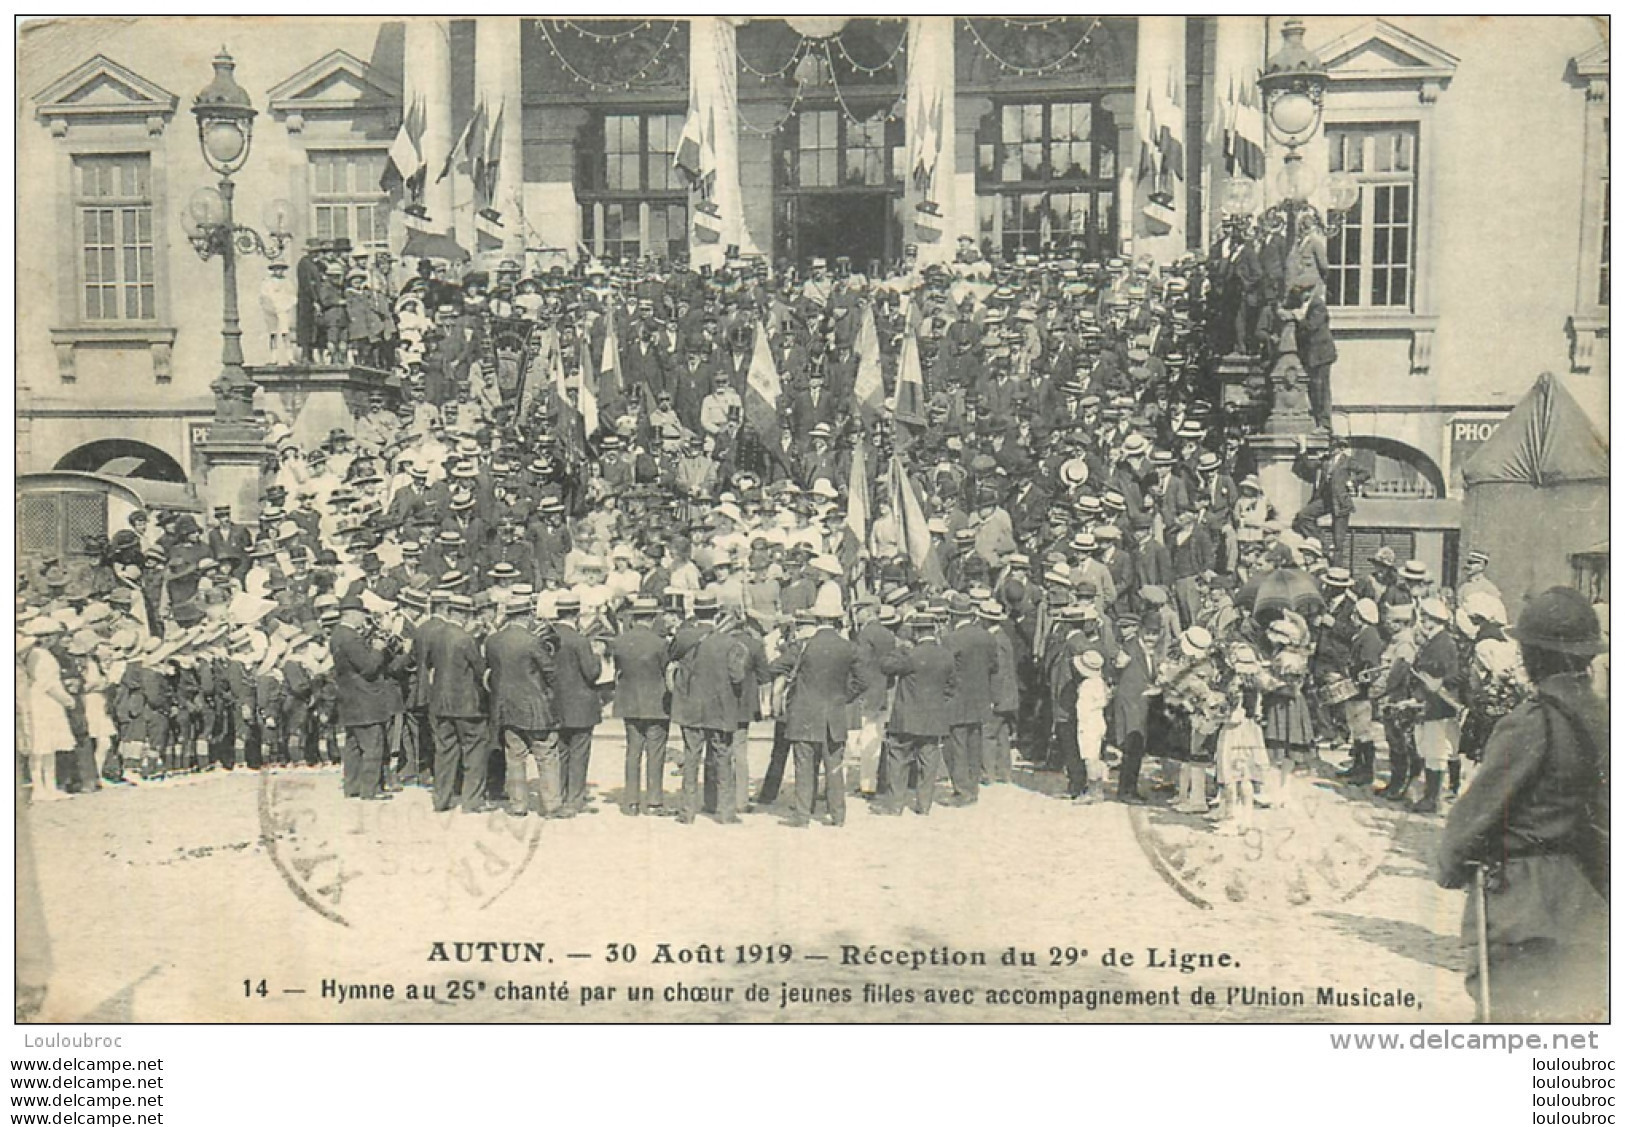 AUTUN RECEPTION DU 29em DE LIGNE LE 30 AOUT 1919 HYMNE CHANTE PAR UN CHOEUR DE JEUNES FILLES - Autun